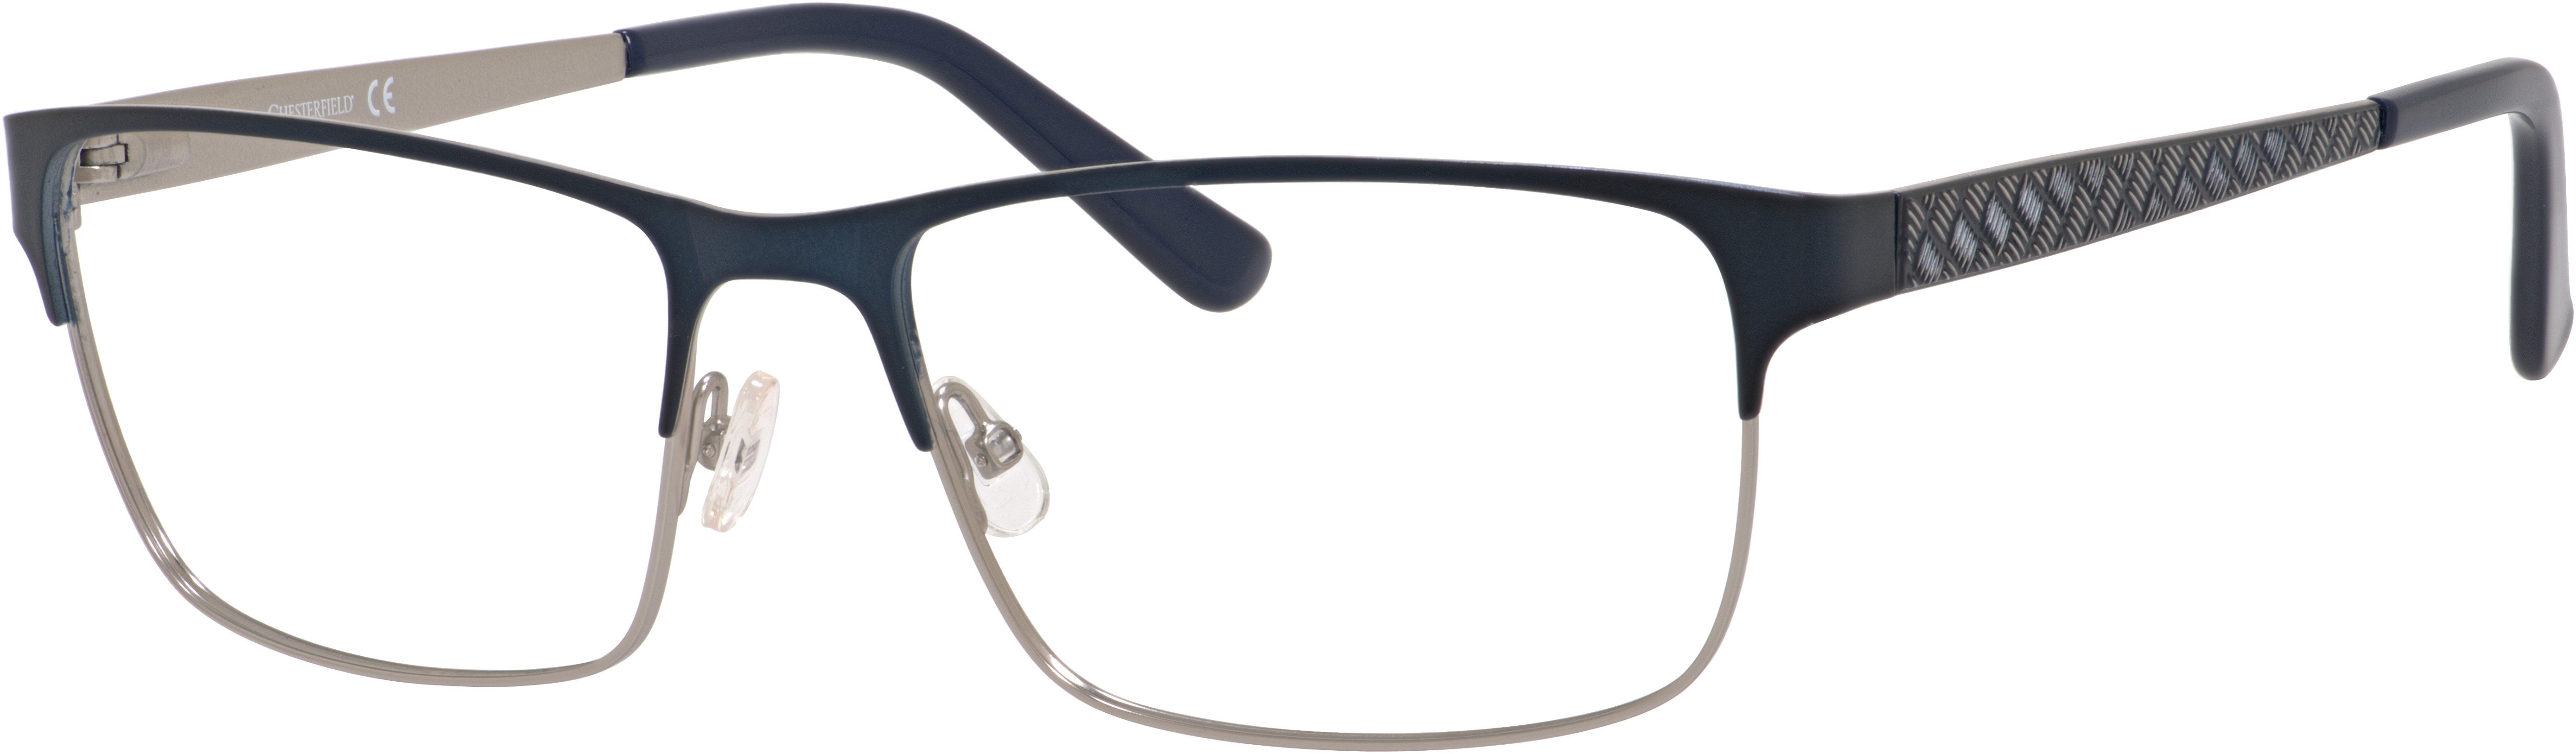  Chesterfield 34 XL Rectangular Eyeglasses 0RD4-0RD4  Navy / Gunmetal (00 Demo Lens)